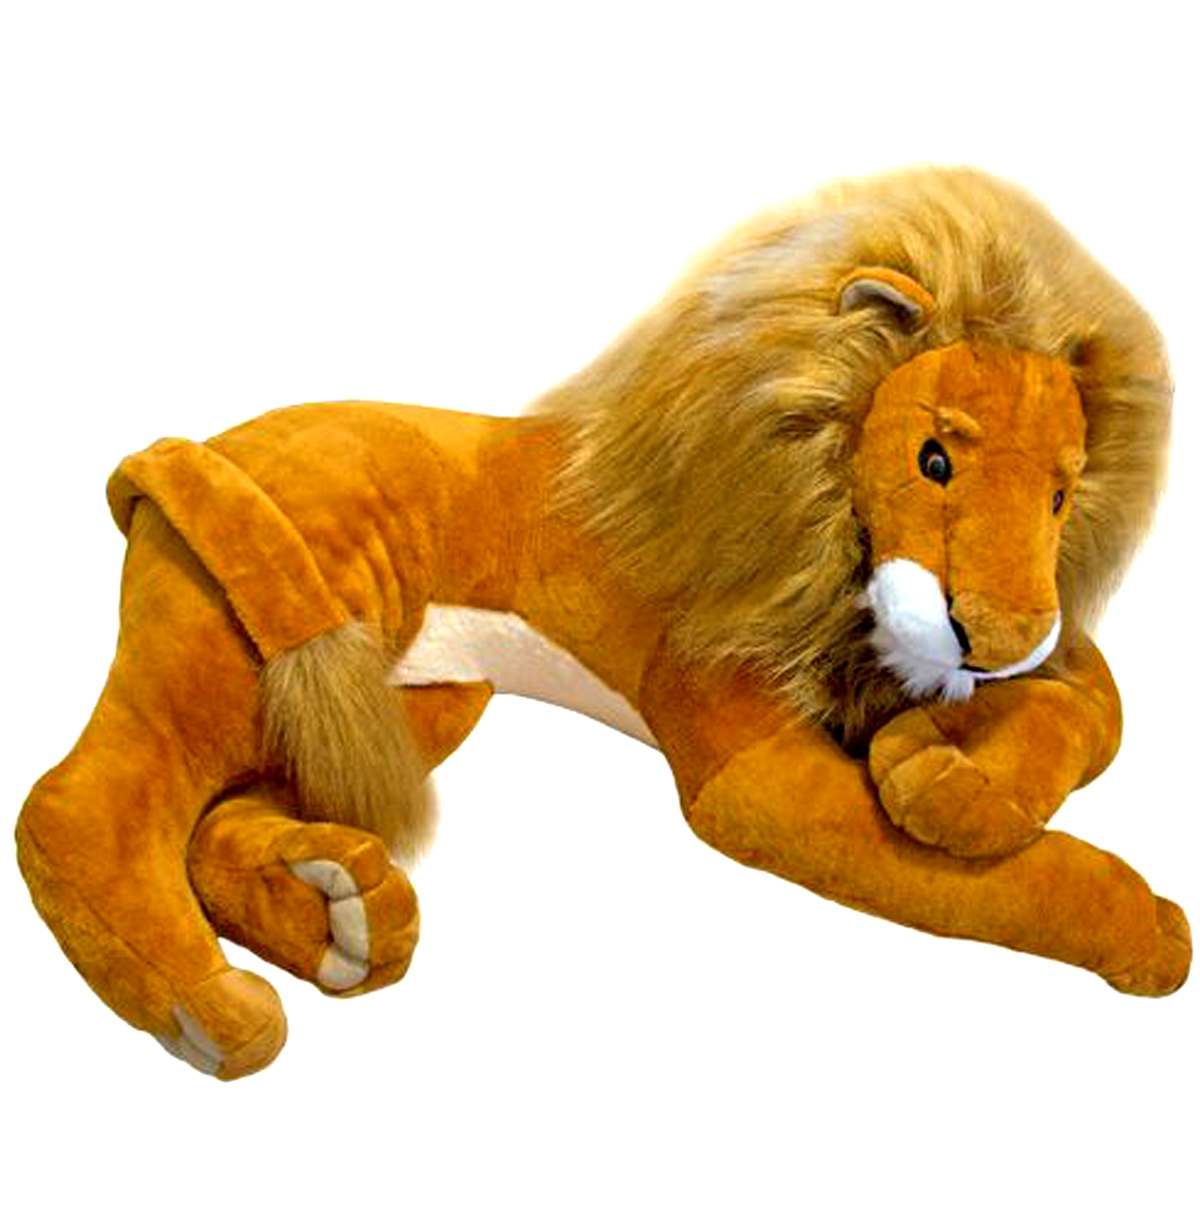 Мягкая игрушка Лев